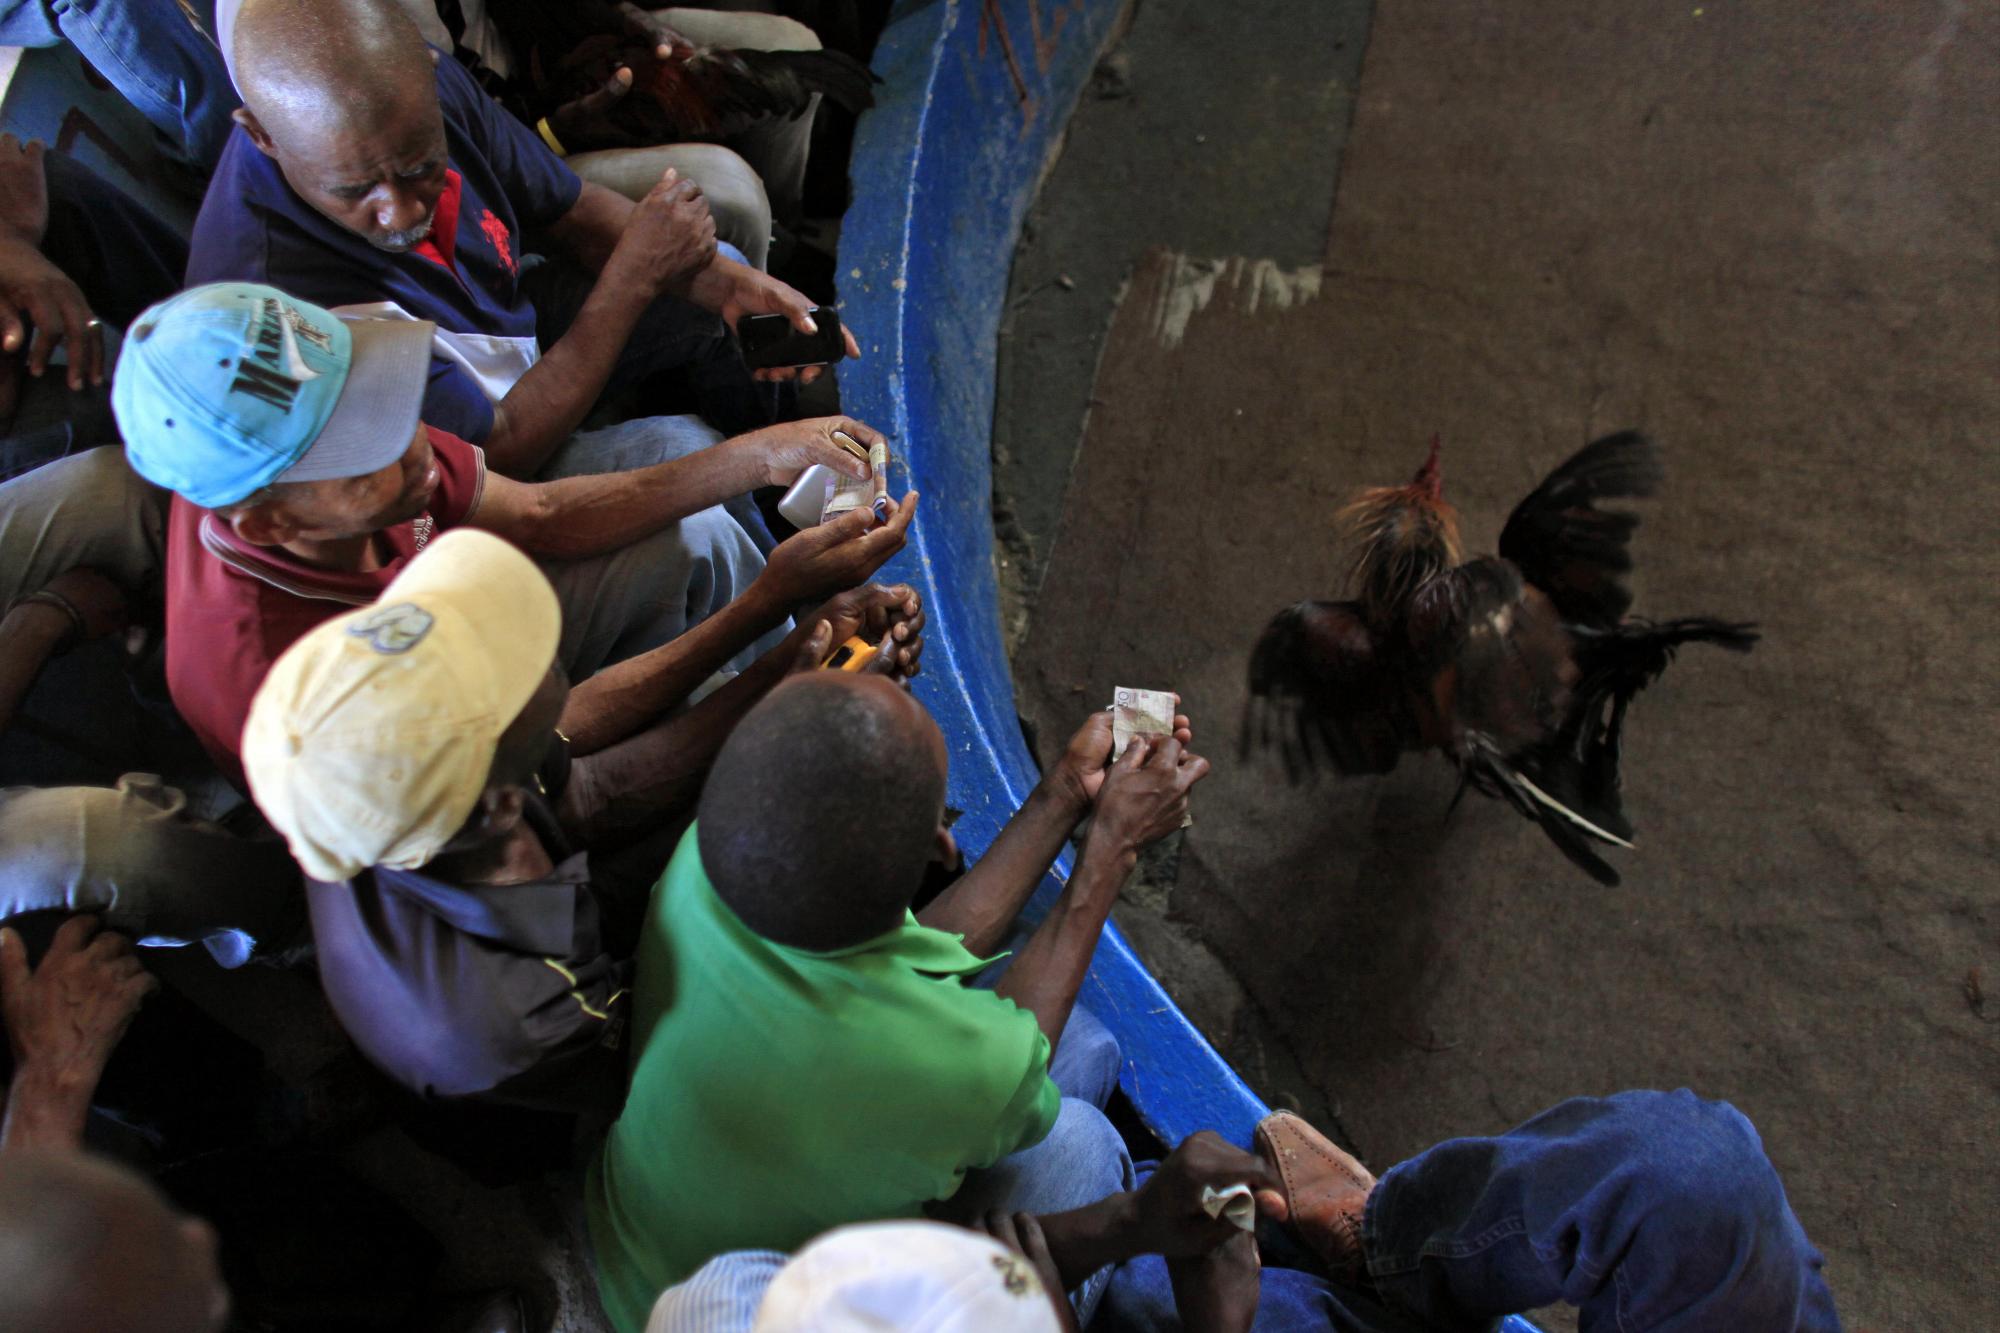 En esta imagen, tomada el 31 de octubre de 2015, espectadores observan una pelea de gallos en el recinto de Morne Hercule, en Petion-Ville, Haití. Para personas que viven con menos de dos dólares al día, como muchos de los haitianos, la posibilidad de ganar dinero con apuestas en peleas de gallos o en la lotería es uno de los principales atractivos.